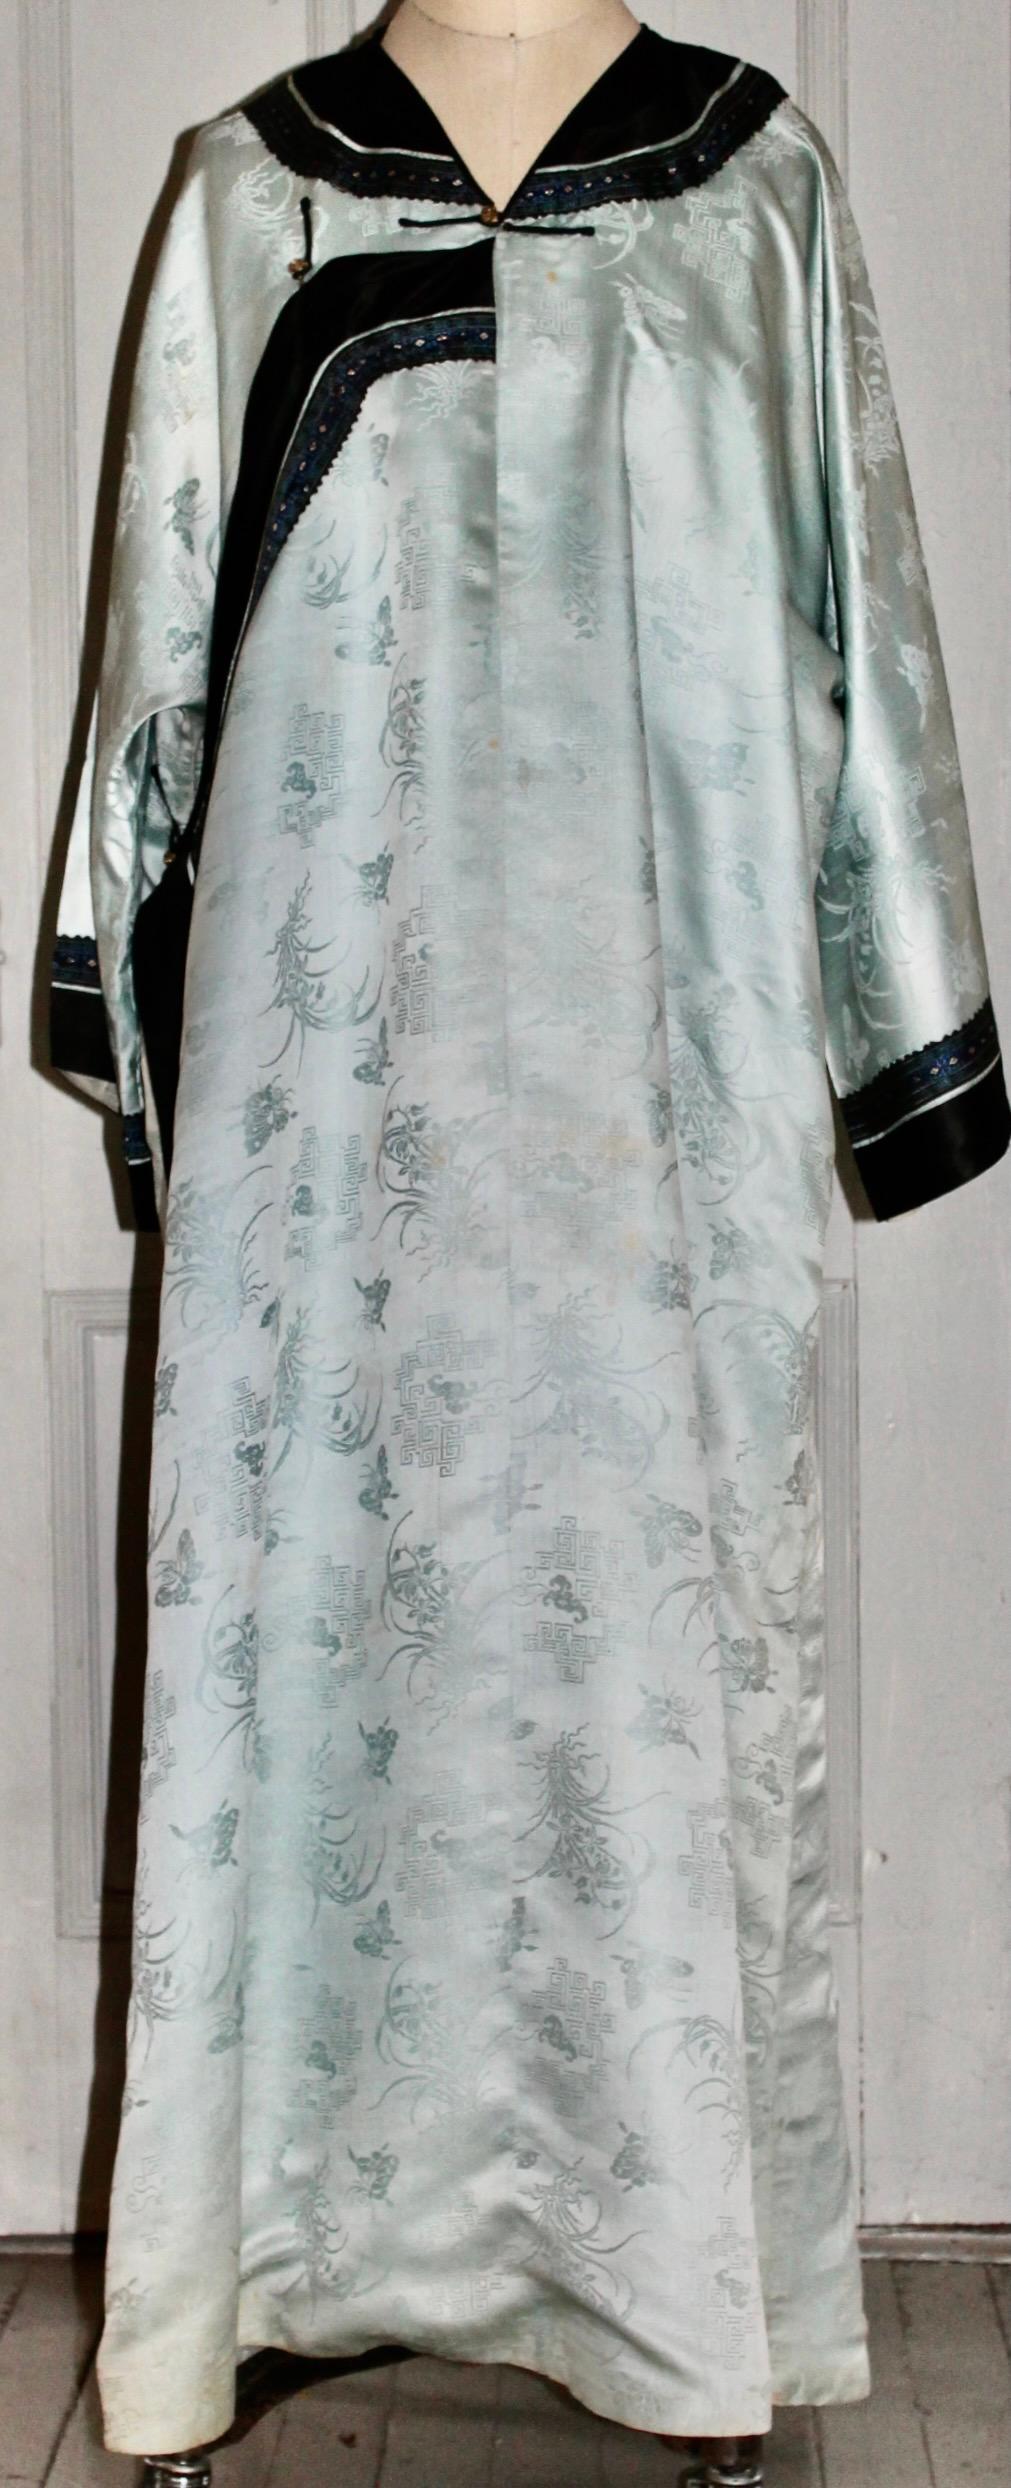 Offrant un Kimono ancien en soie chinoise, à motifs bleu clair
soie, avec une doublure en soie blanche.  Bordure brodée appliquée aux manches et à l'encolure.  Longueur totale 52